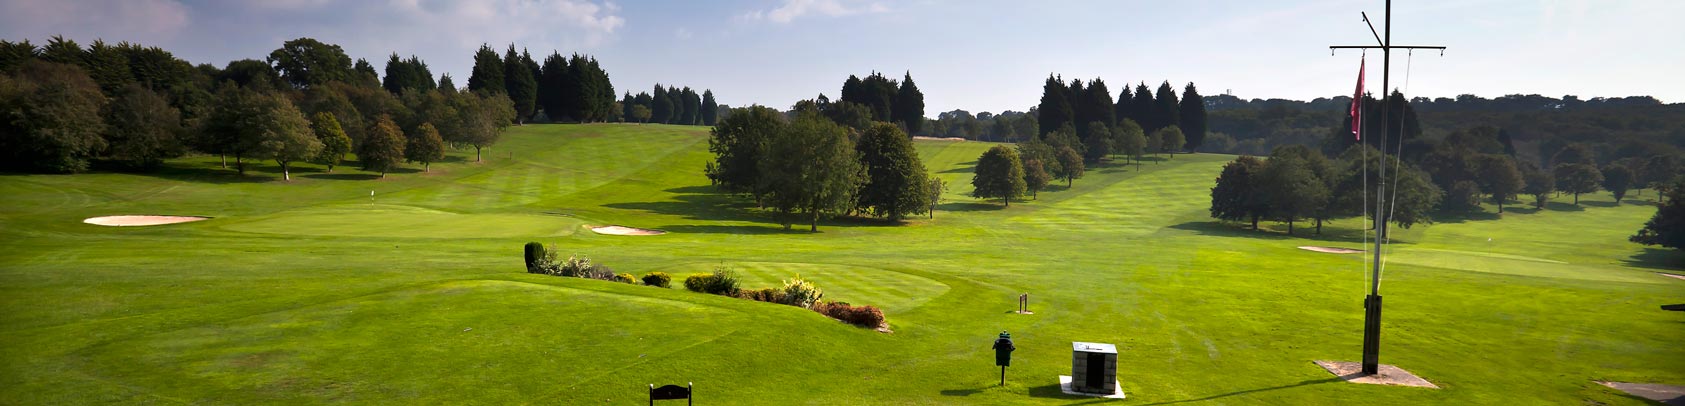 Golf Club Cardiff, Wedding Venues Cardiff